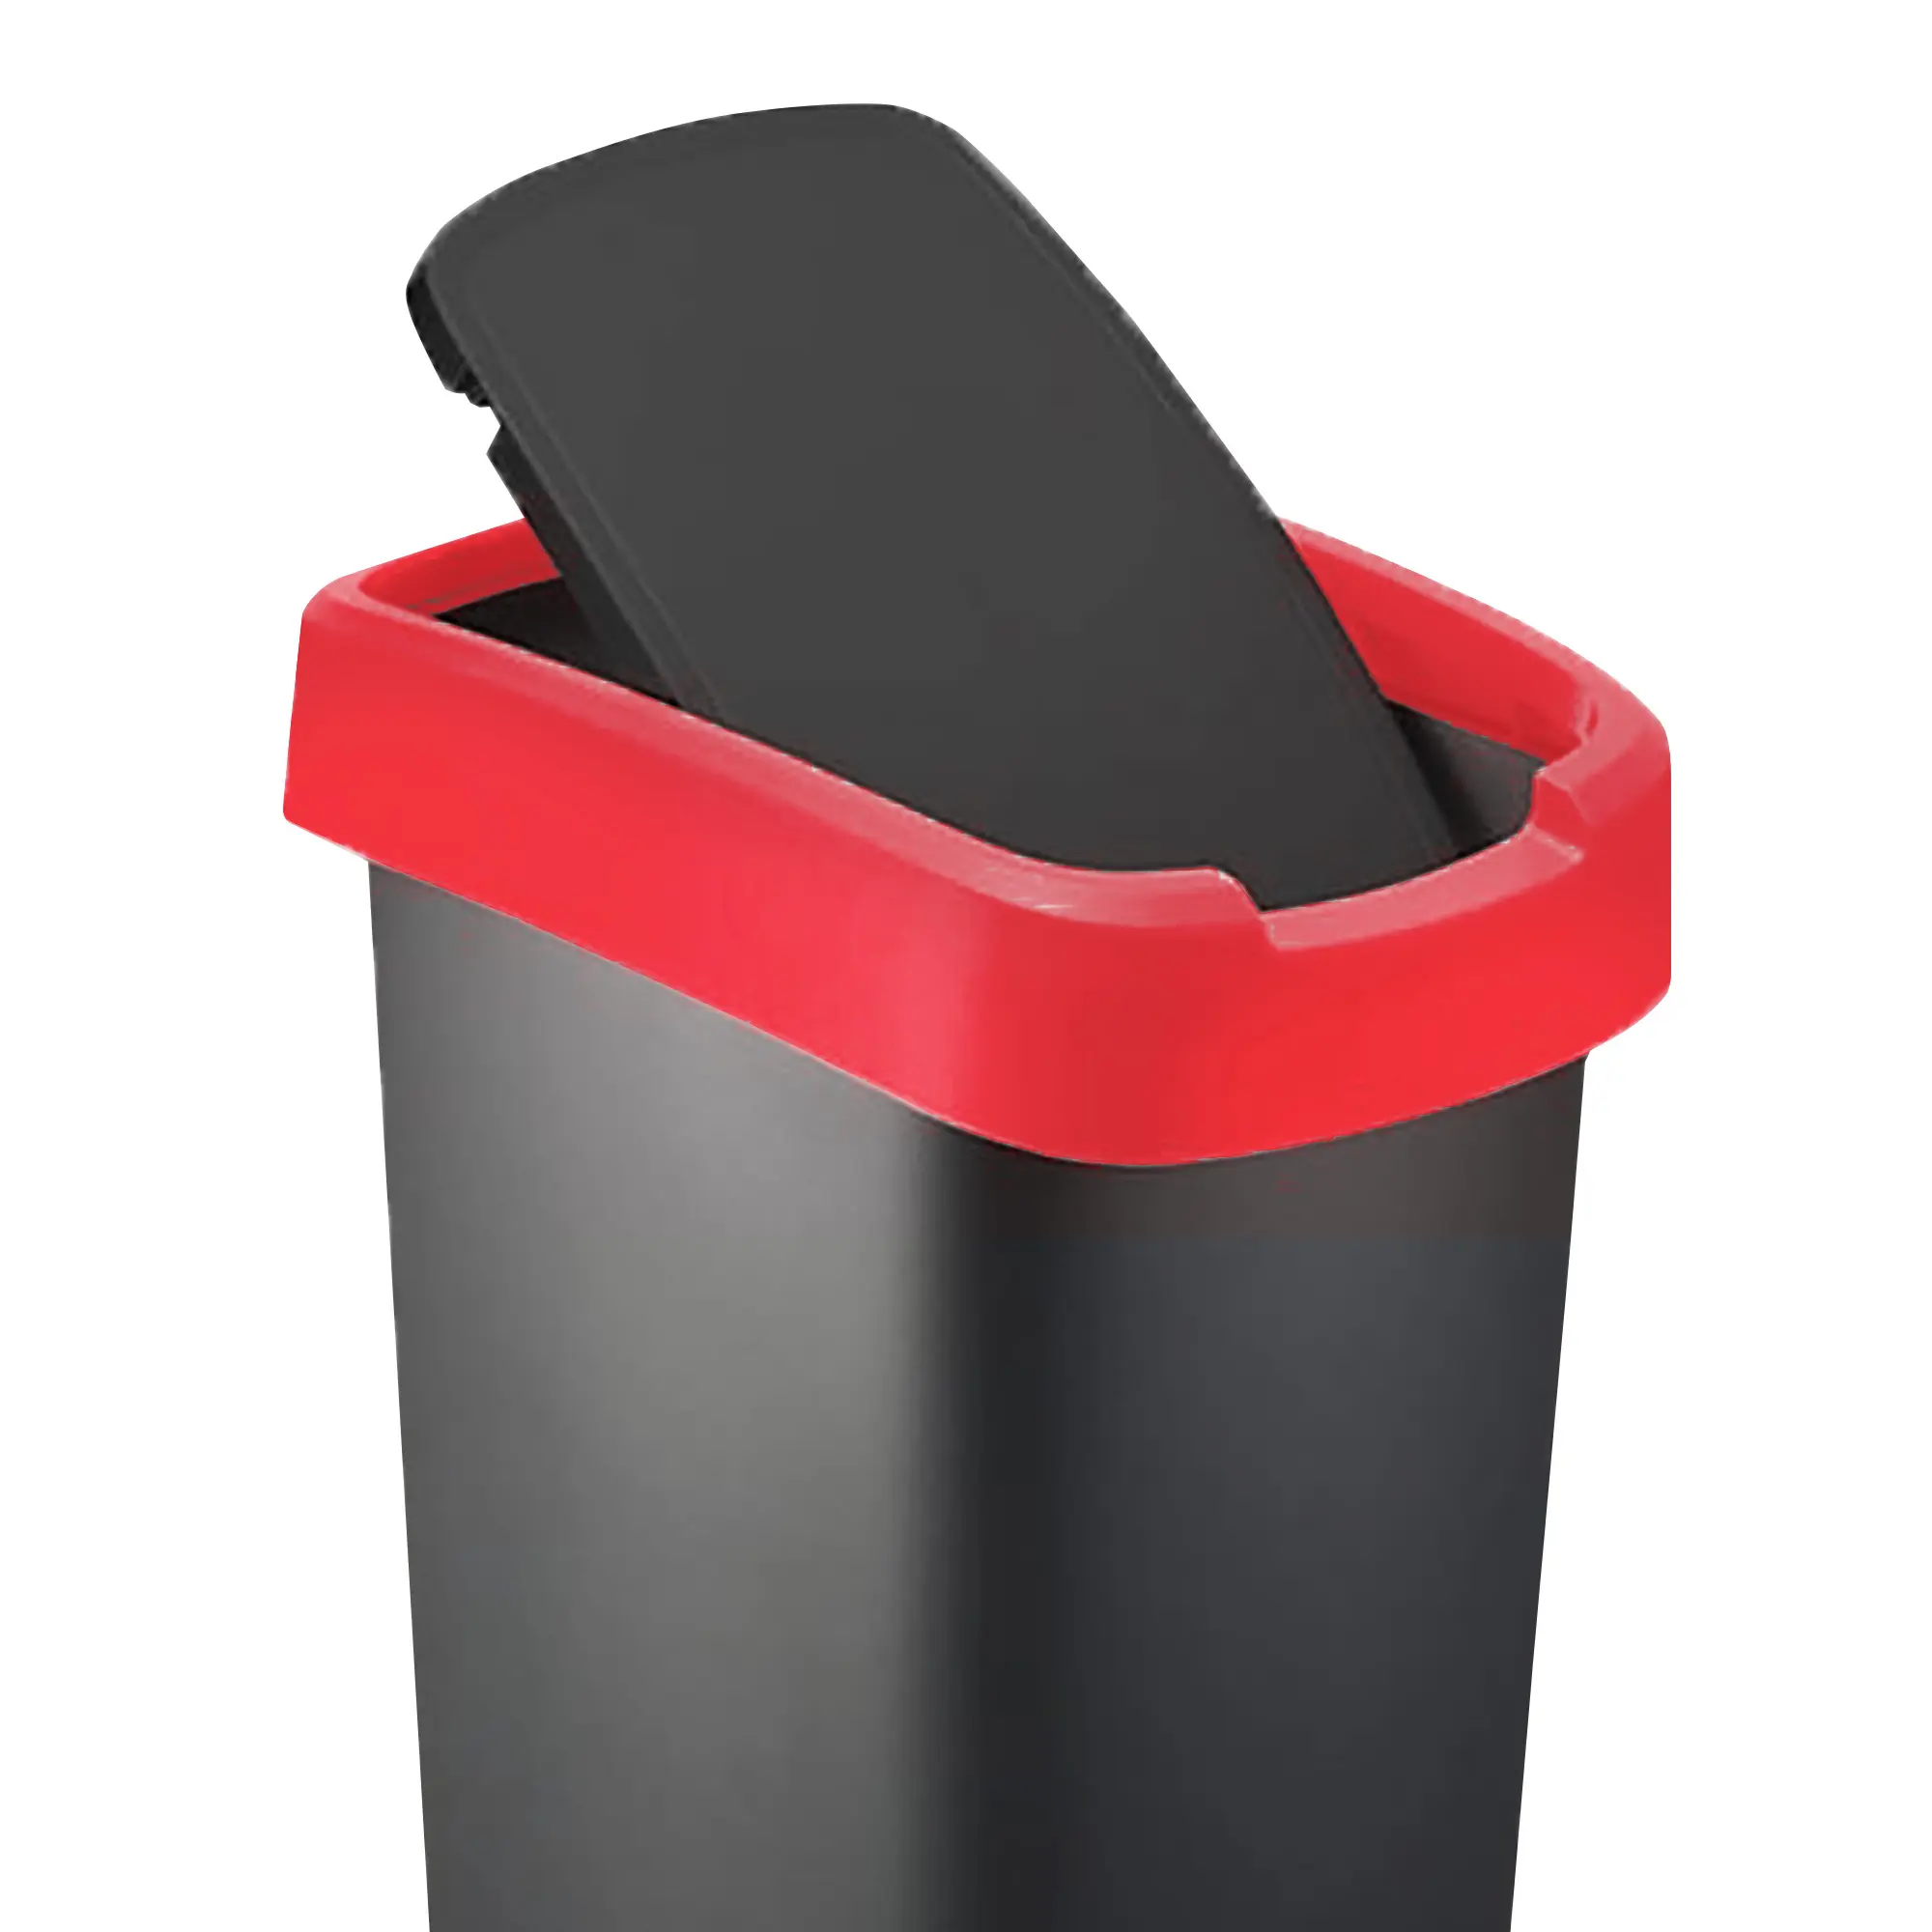 RothoPro Twist Abfallbehälter 50 Liter schwarz/rot Schwingfunktion 59135438